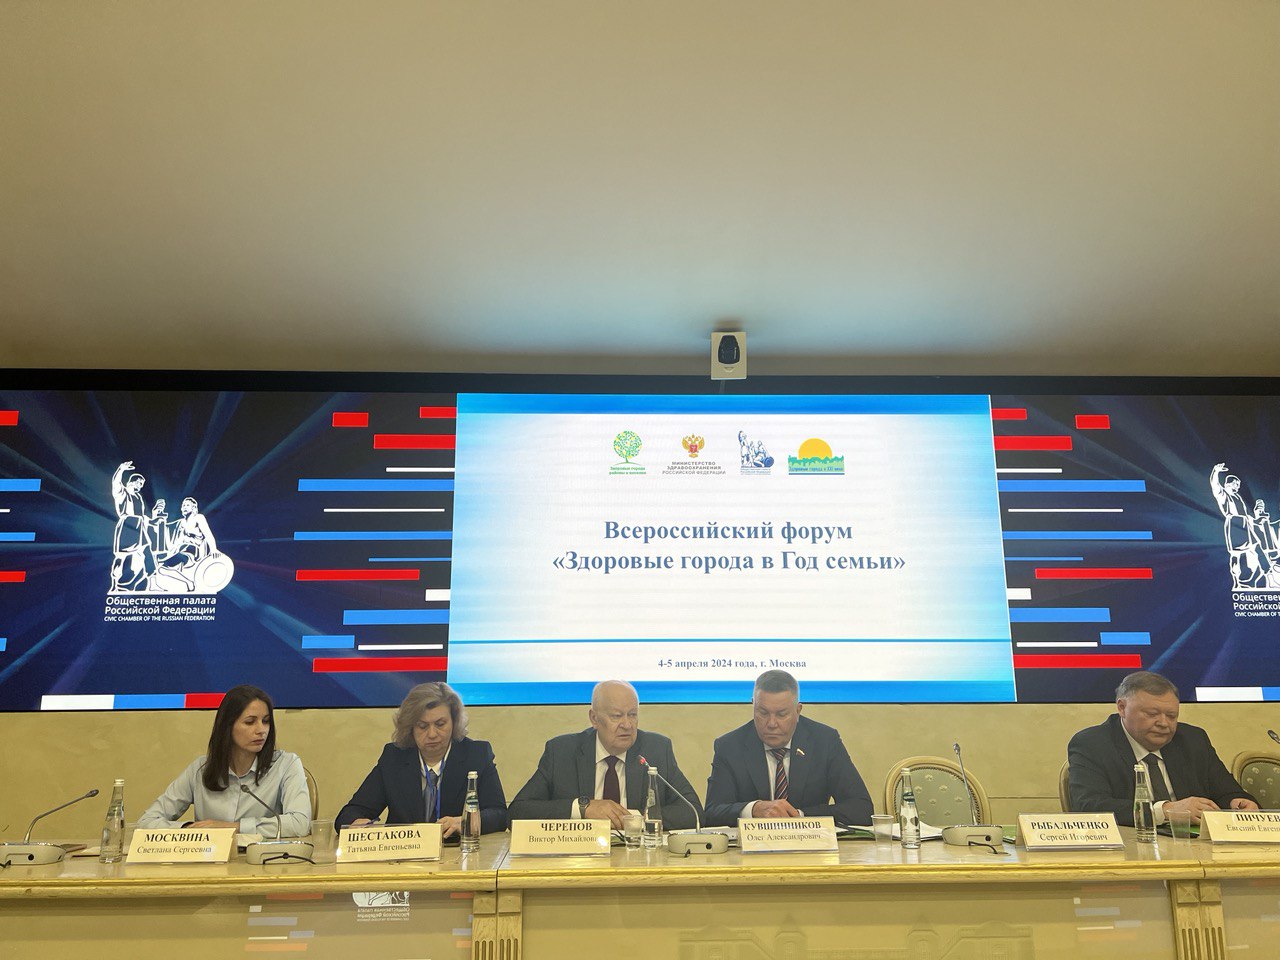 Представители от Белгородской области приняли участие во Всероссийском форуме «Здоровые города в Год семьи».